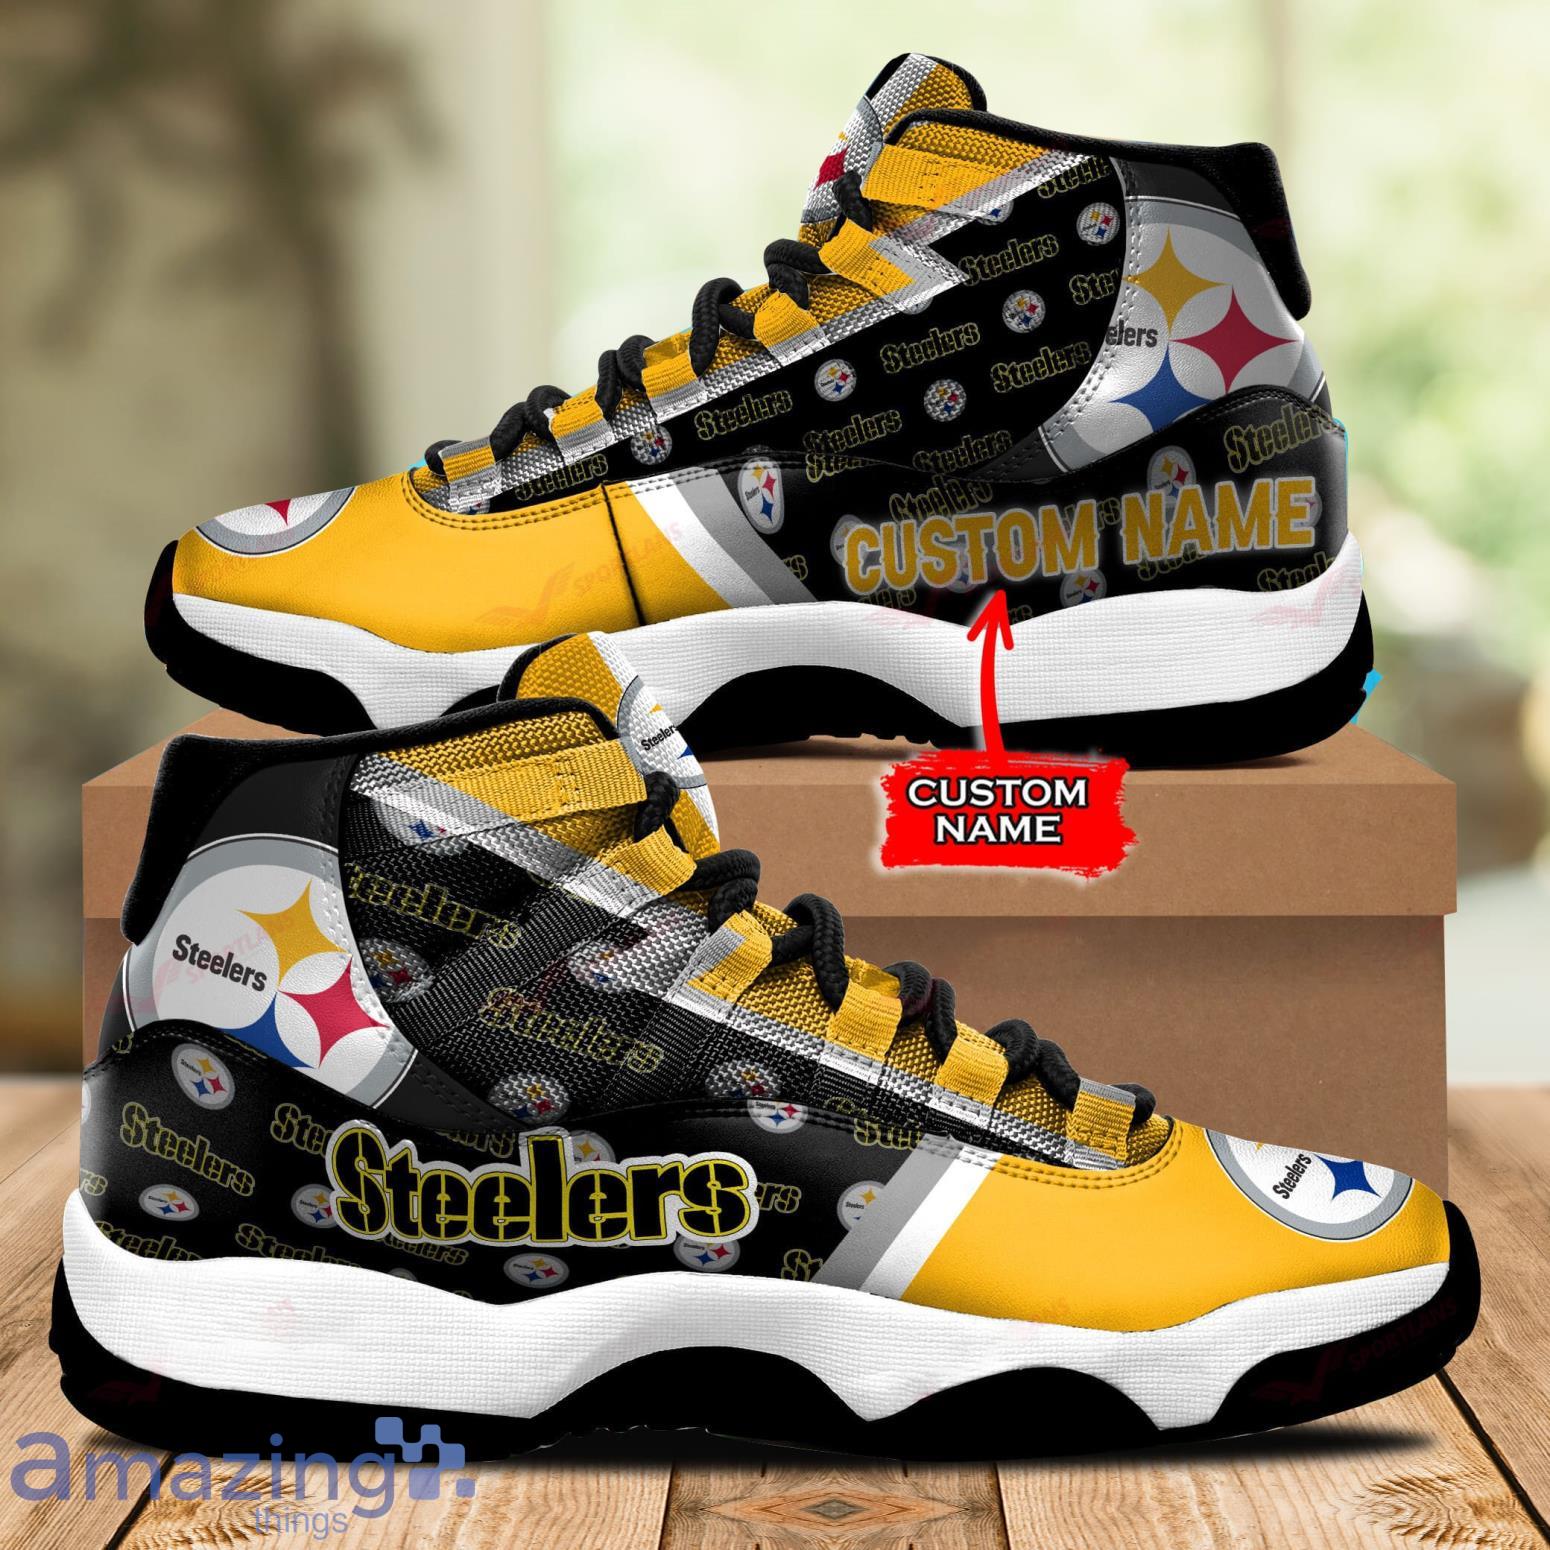 Pittsburgh Steelers NFL Custom Name Air Jordan 11 Sneakers Shoes